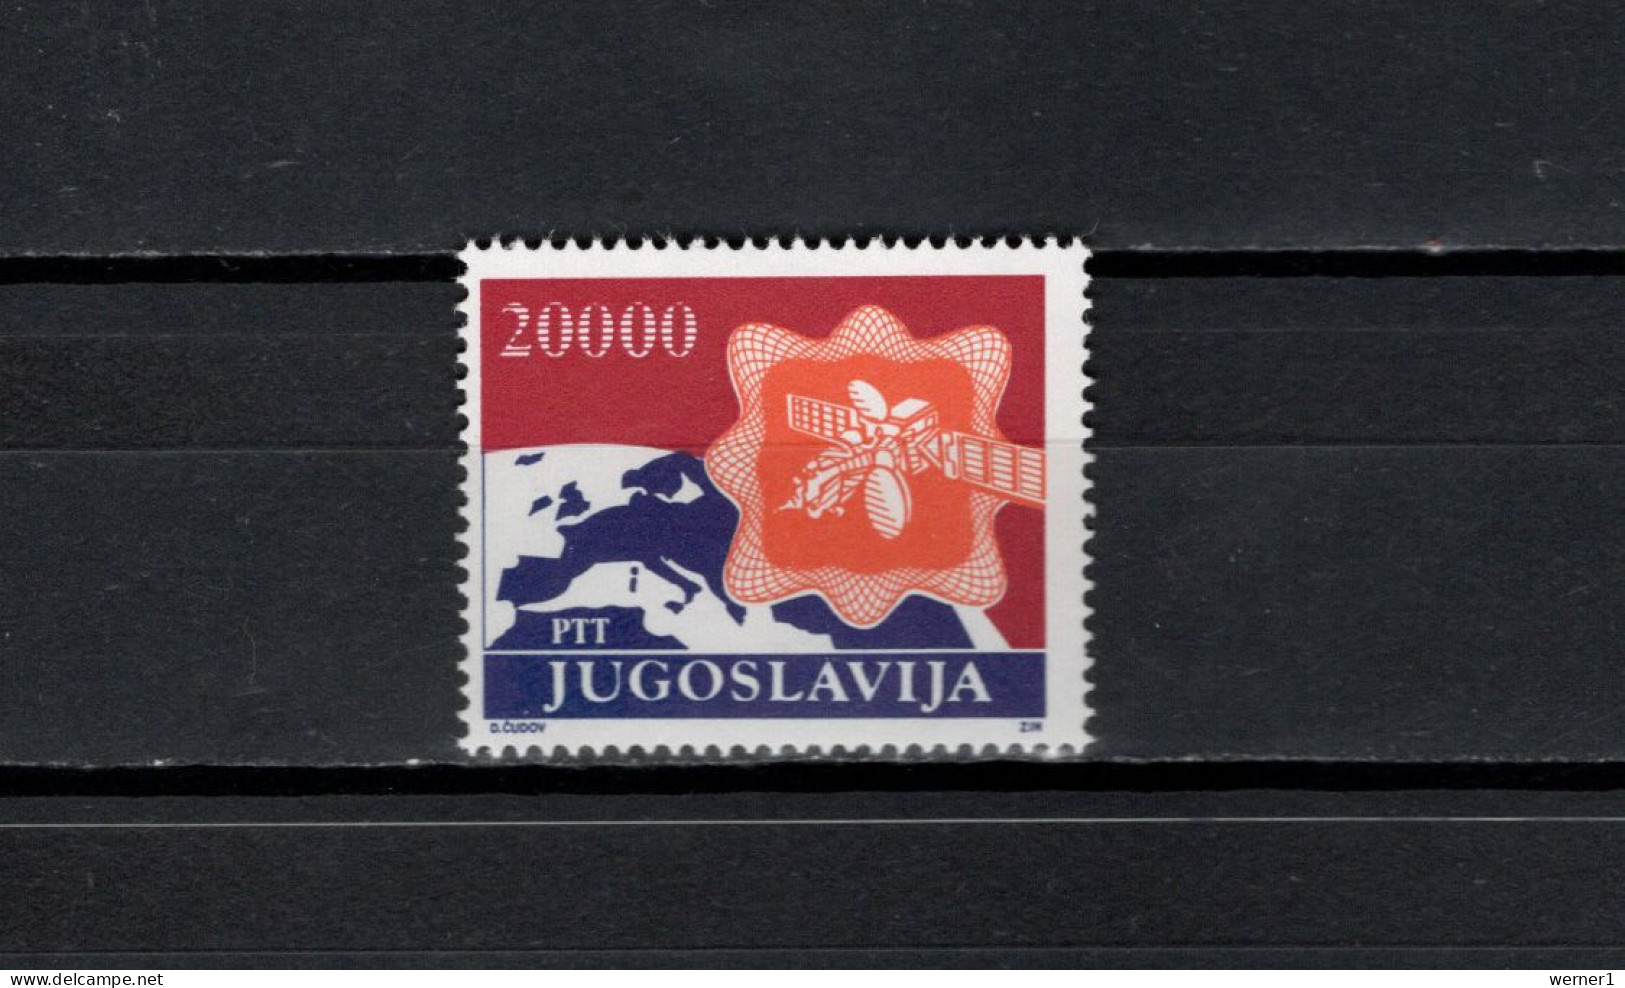 Yugoslavia 1989 Space, Satellite Stamp MNH - Europe